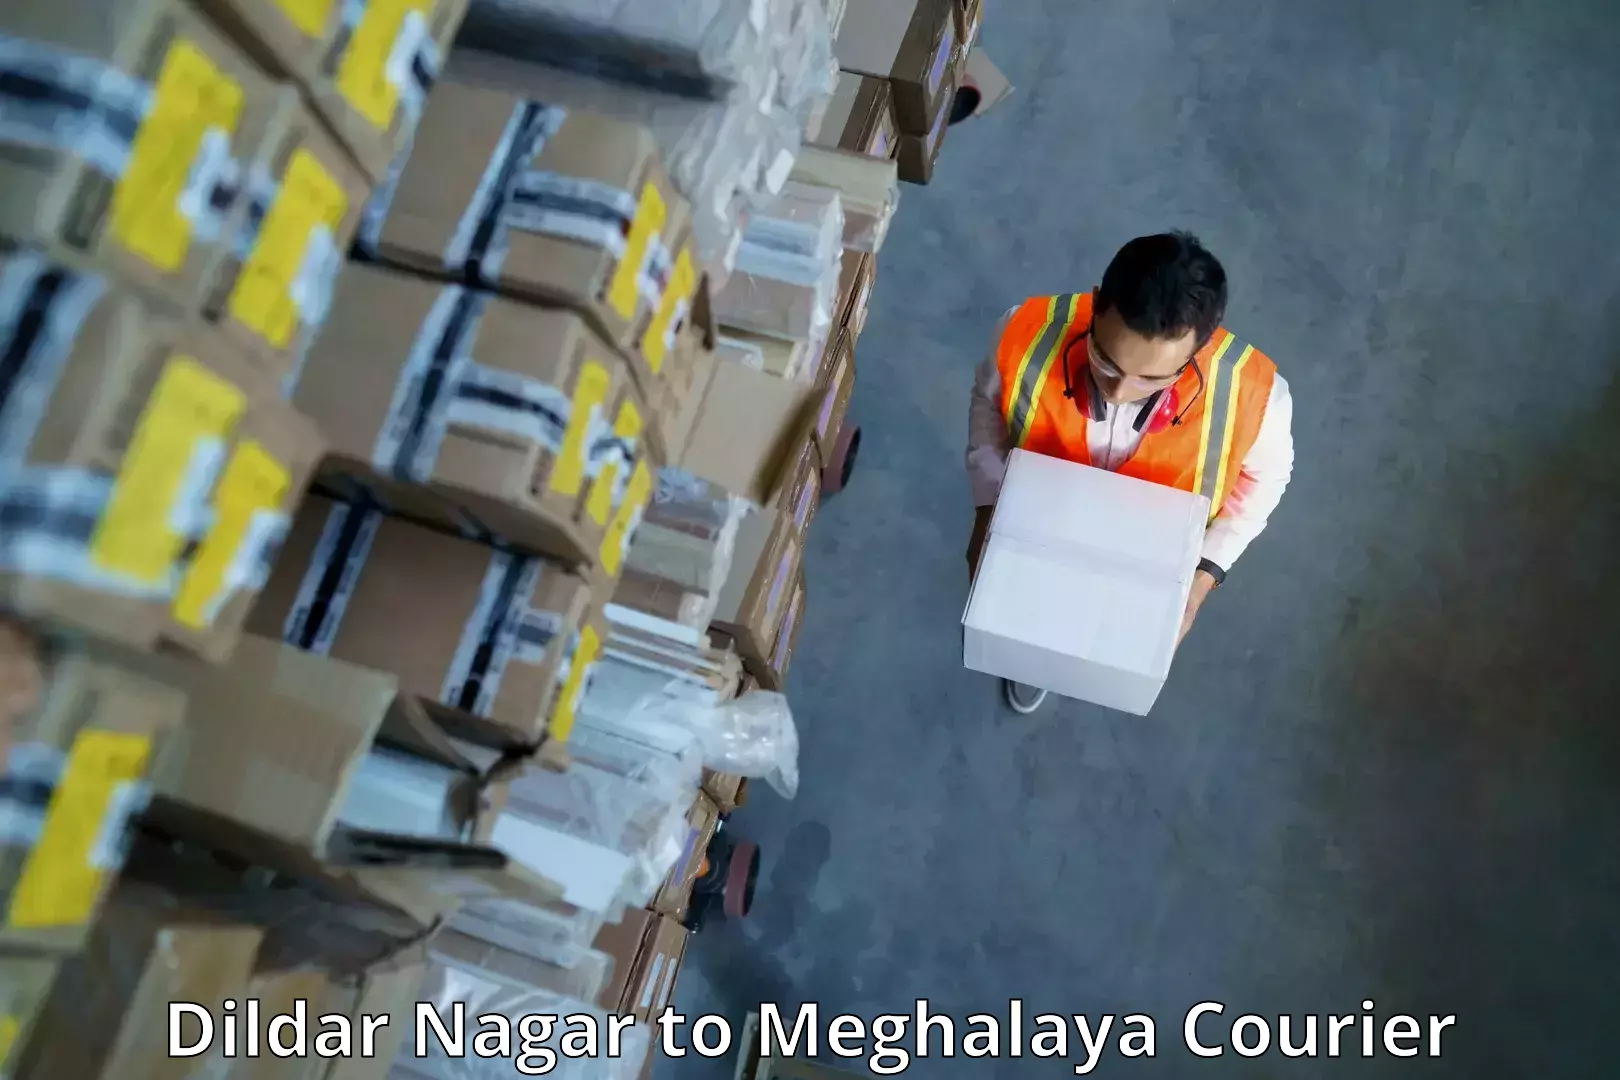 Courier service comparison Dildar Nagar to Dkhiah West